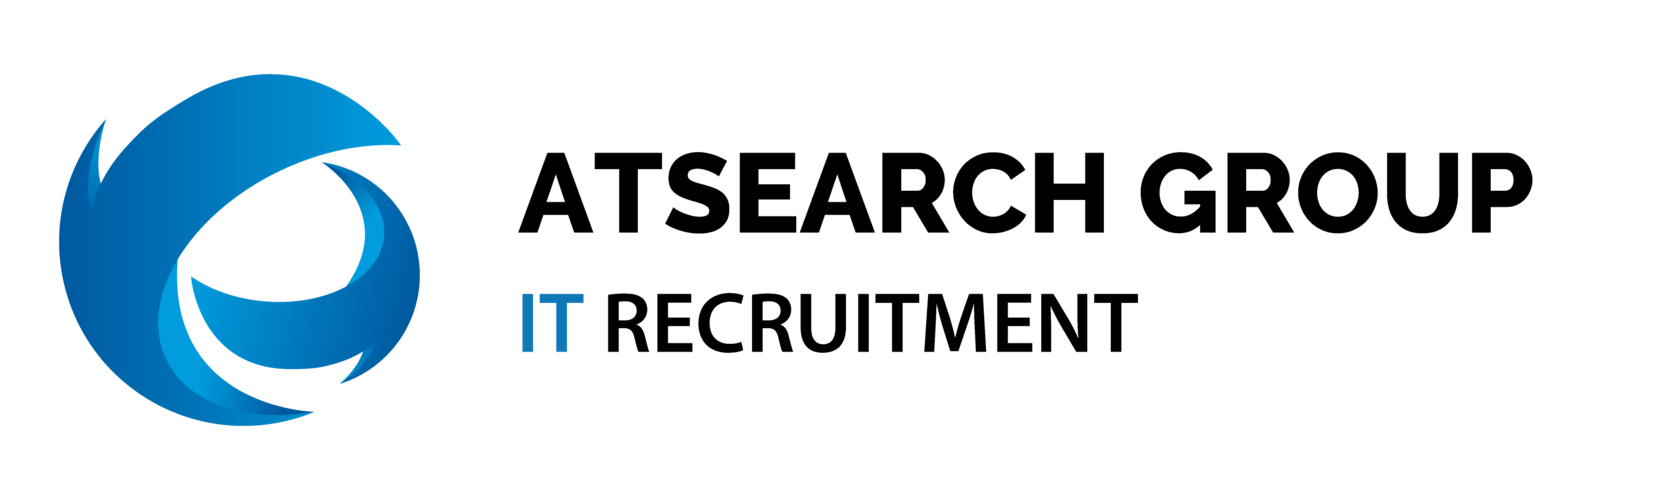 Логотип компании Atsearch